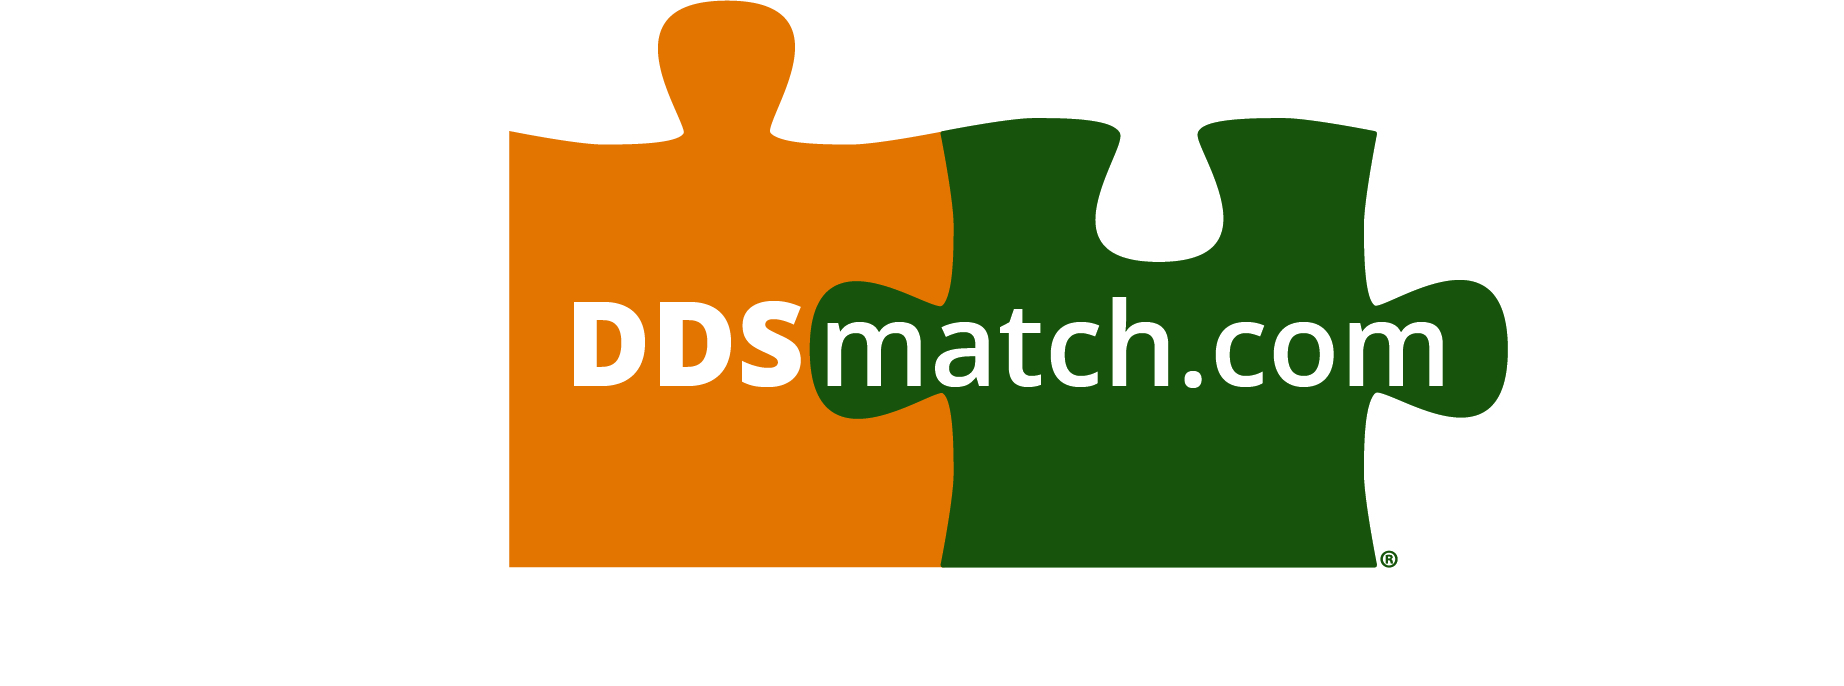 ddsmatch.com - Cameron Elrod Logo